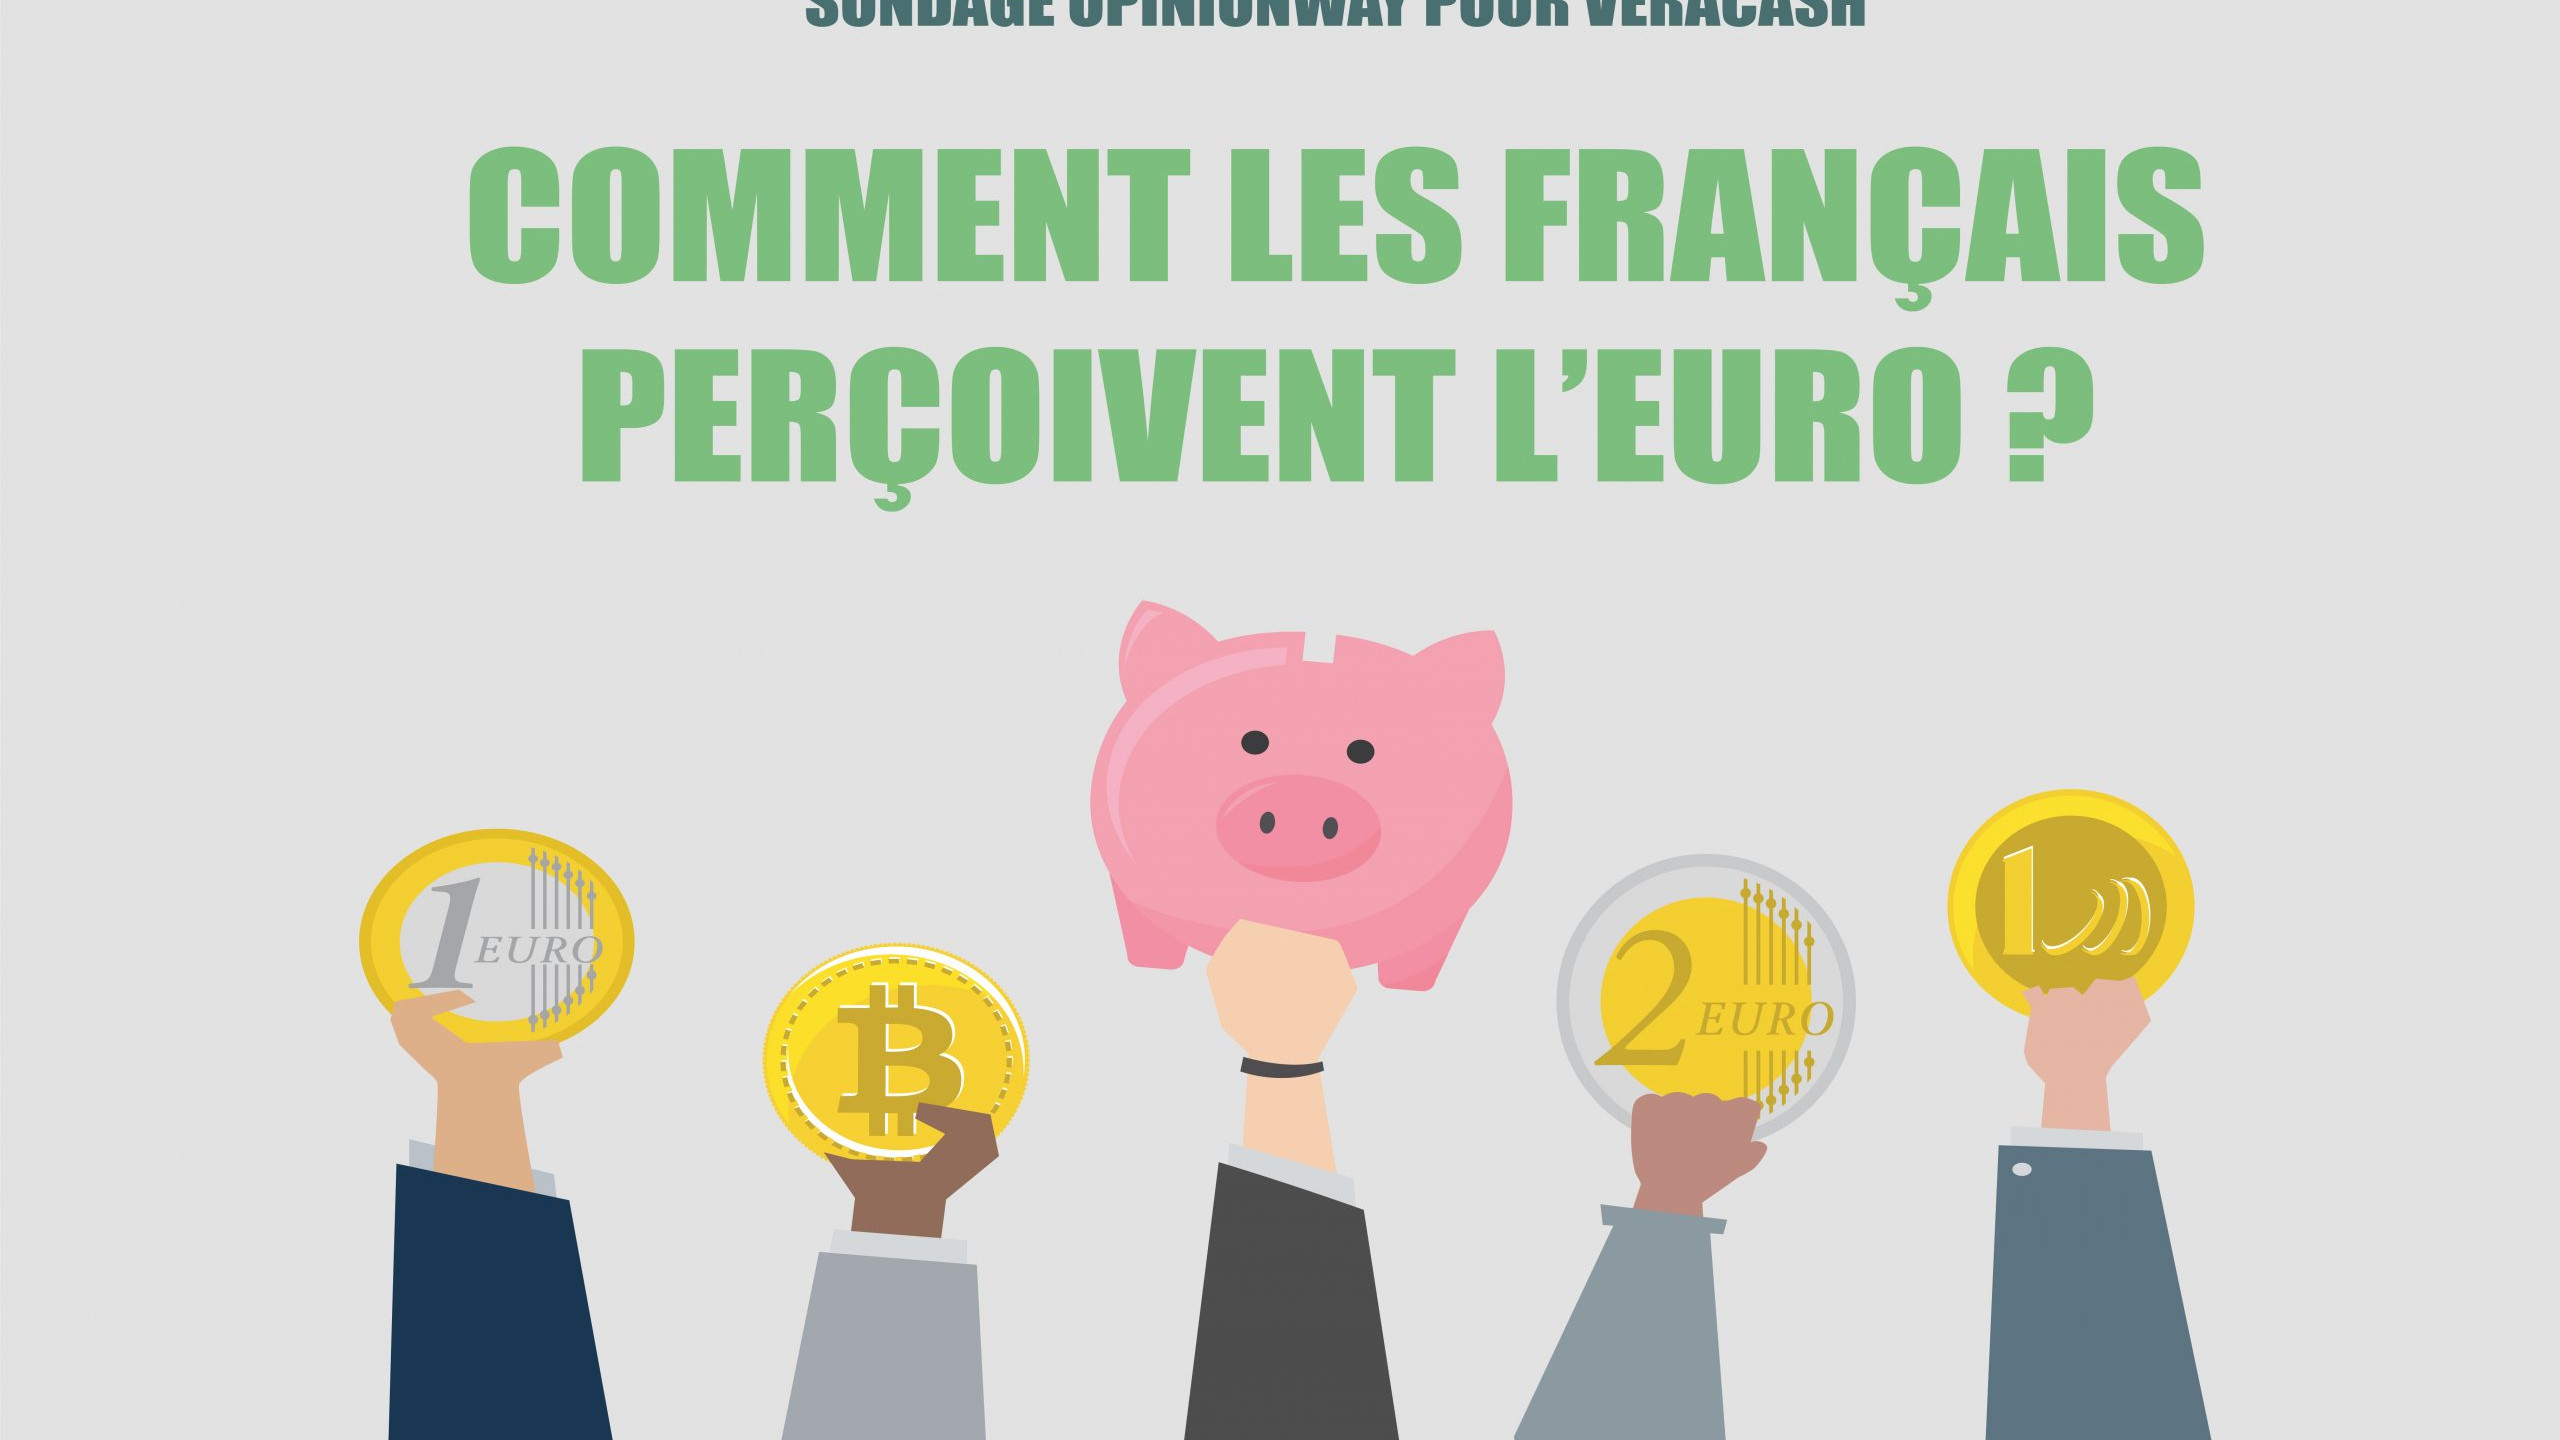 Sondage Opinion Way pour VeraCash - Comment les français perçoivent l'euro